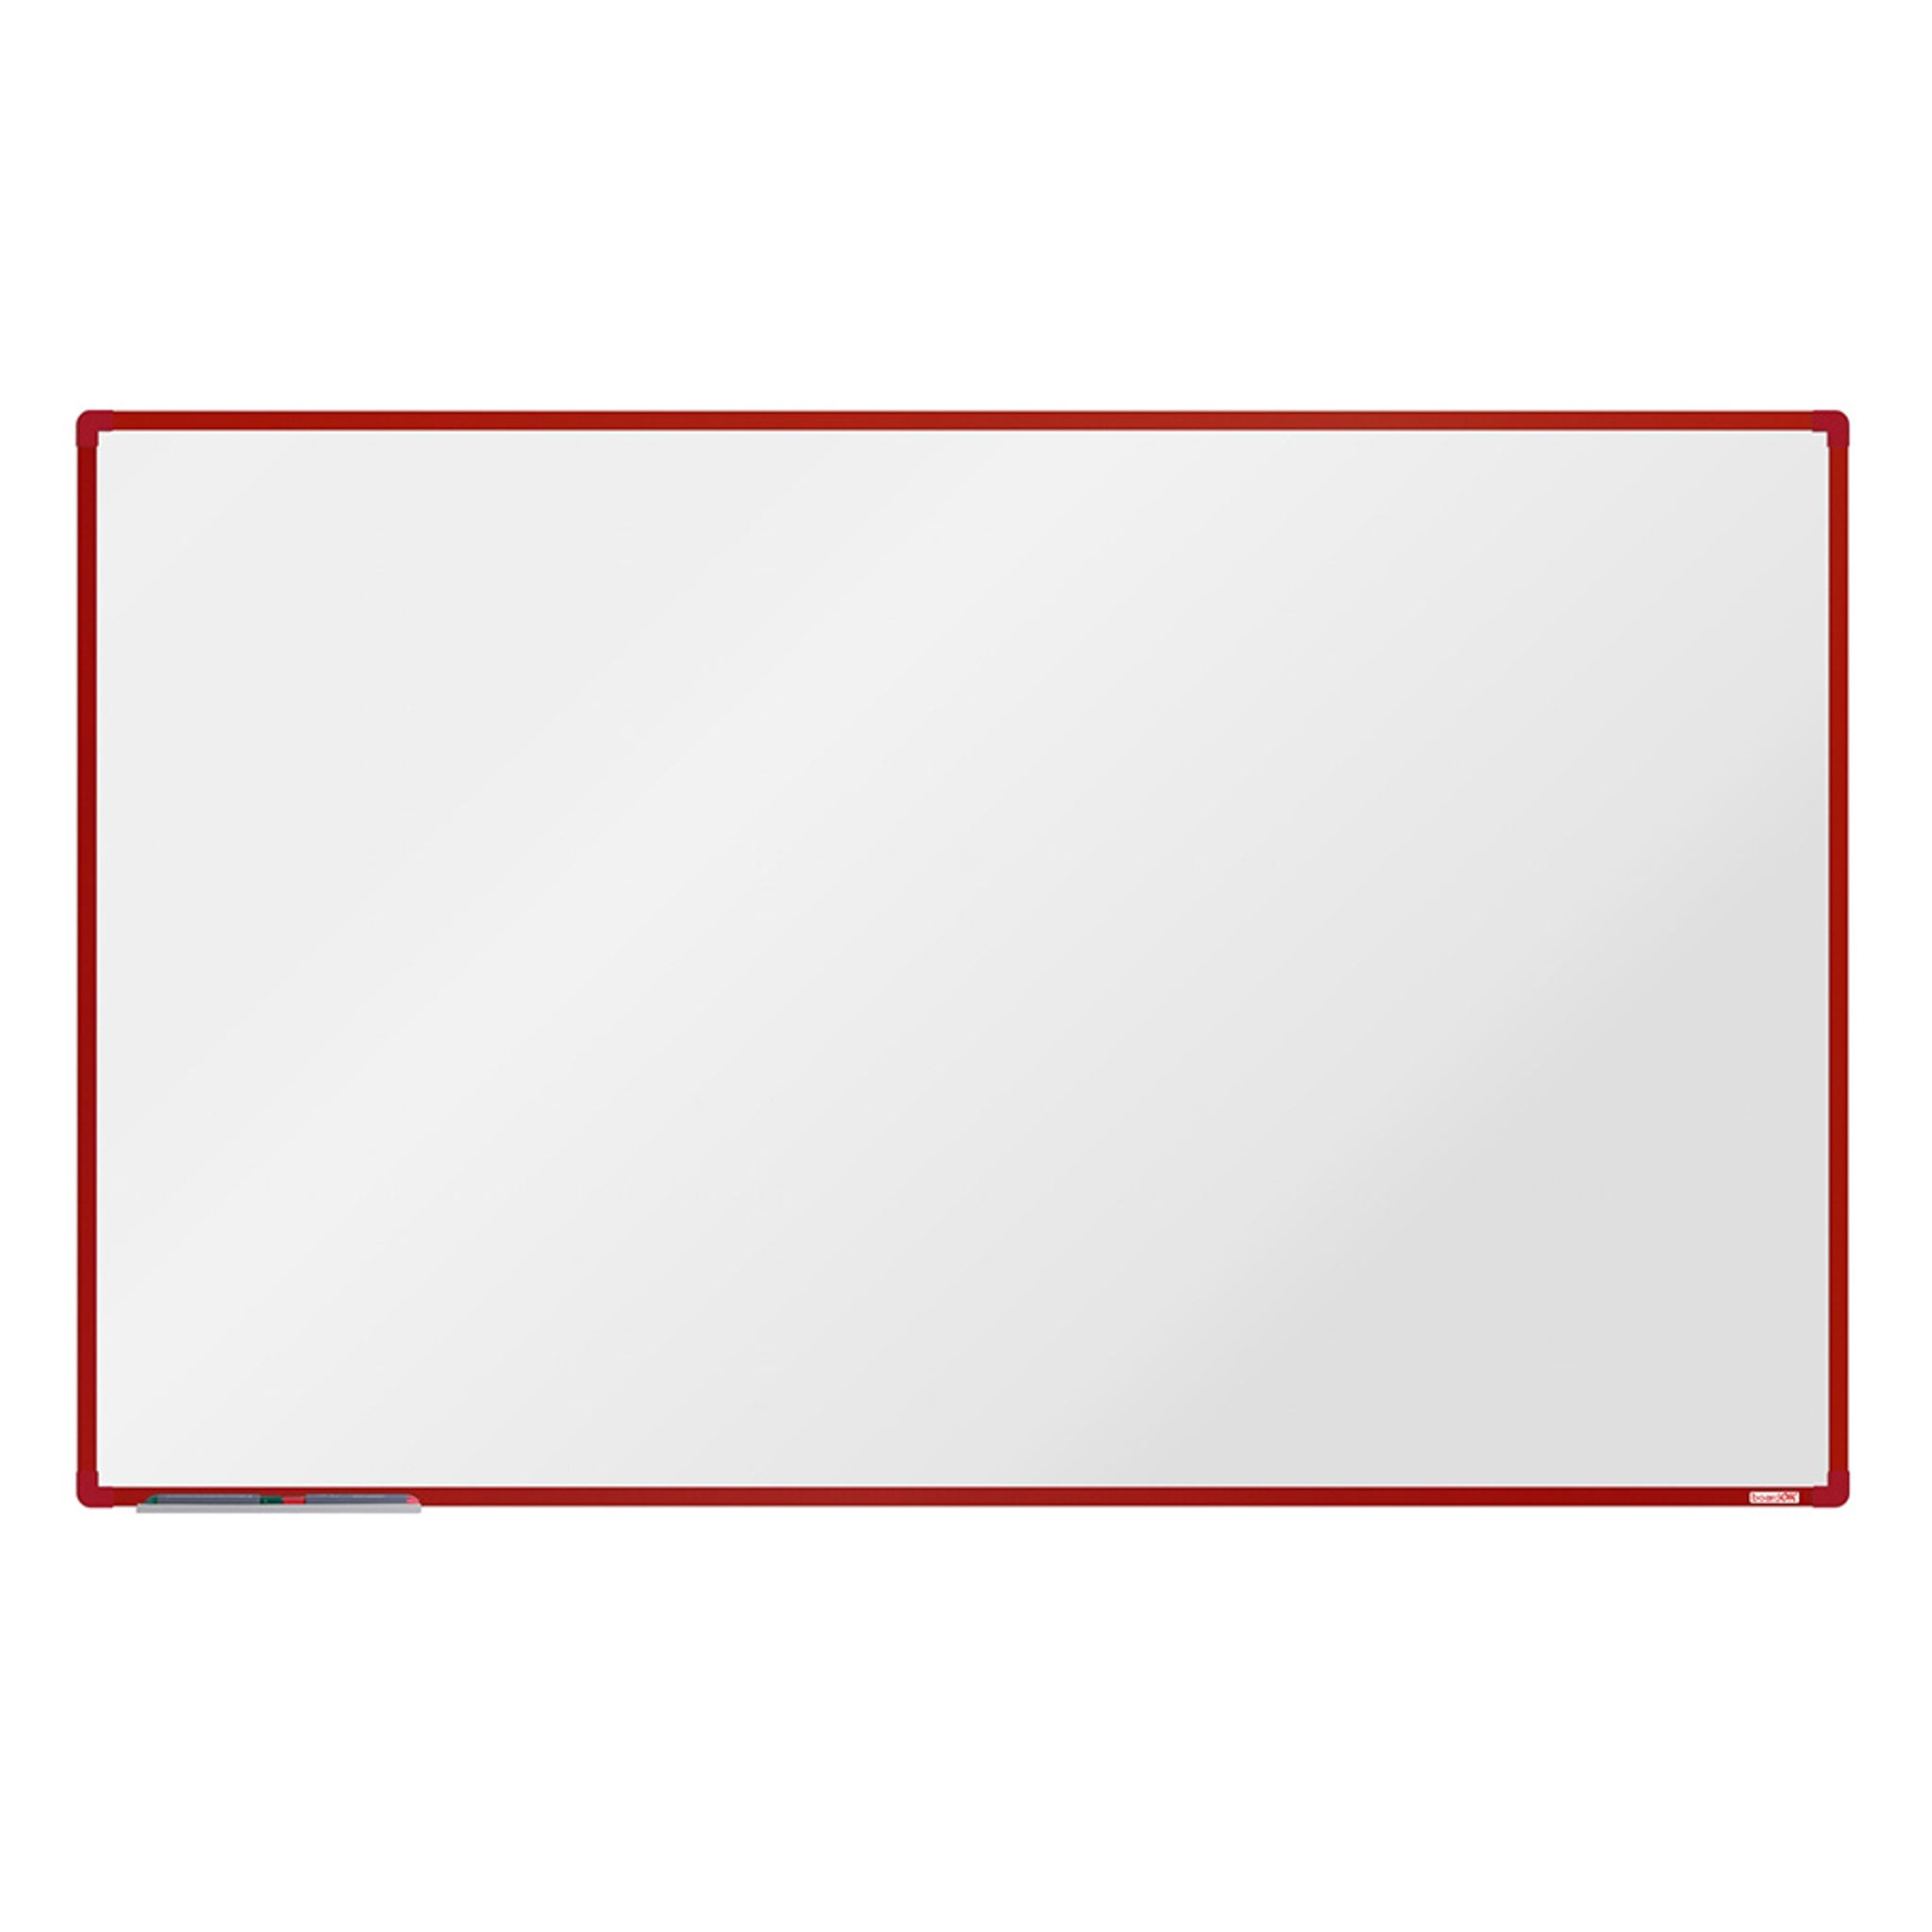 Biela magnetická popisovacia tabuľa boardOK, 2000 x 1200 mm, červený rám